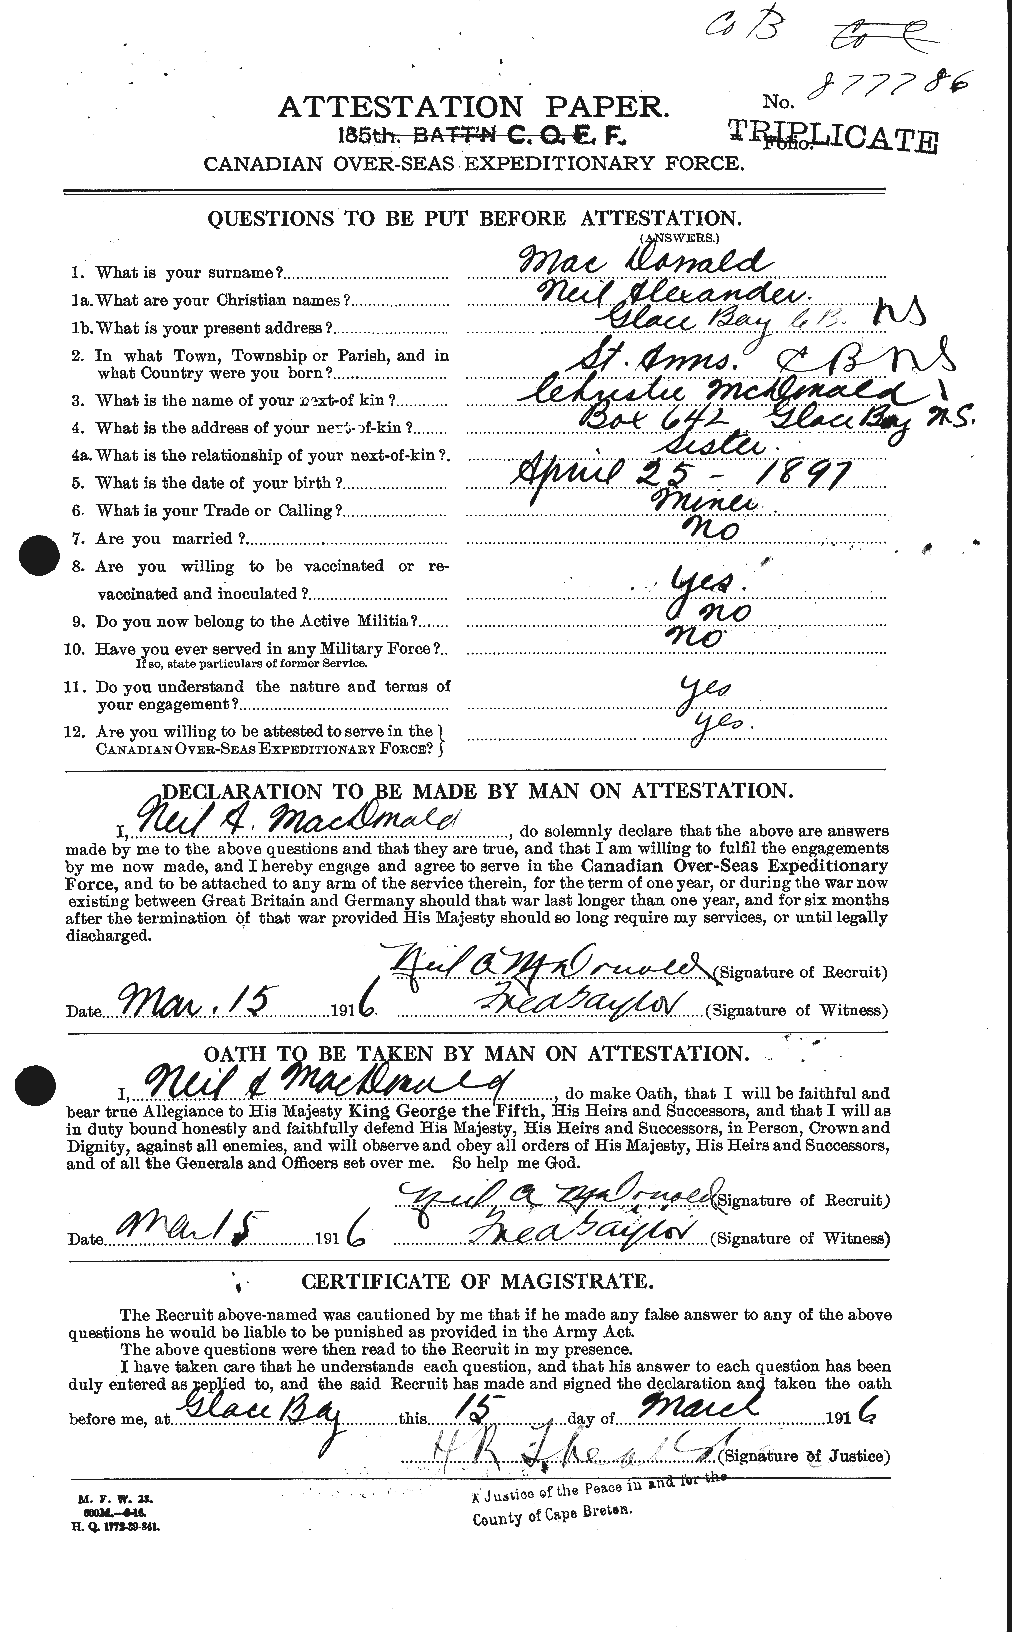 Dossiers du Personnel de la Première Guerre mondiale - CEC 524521a